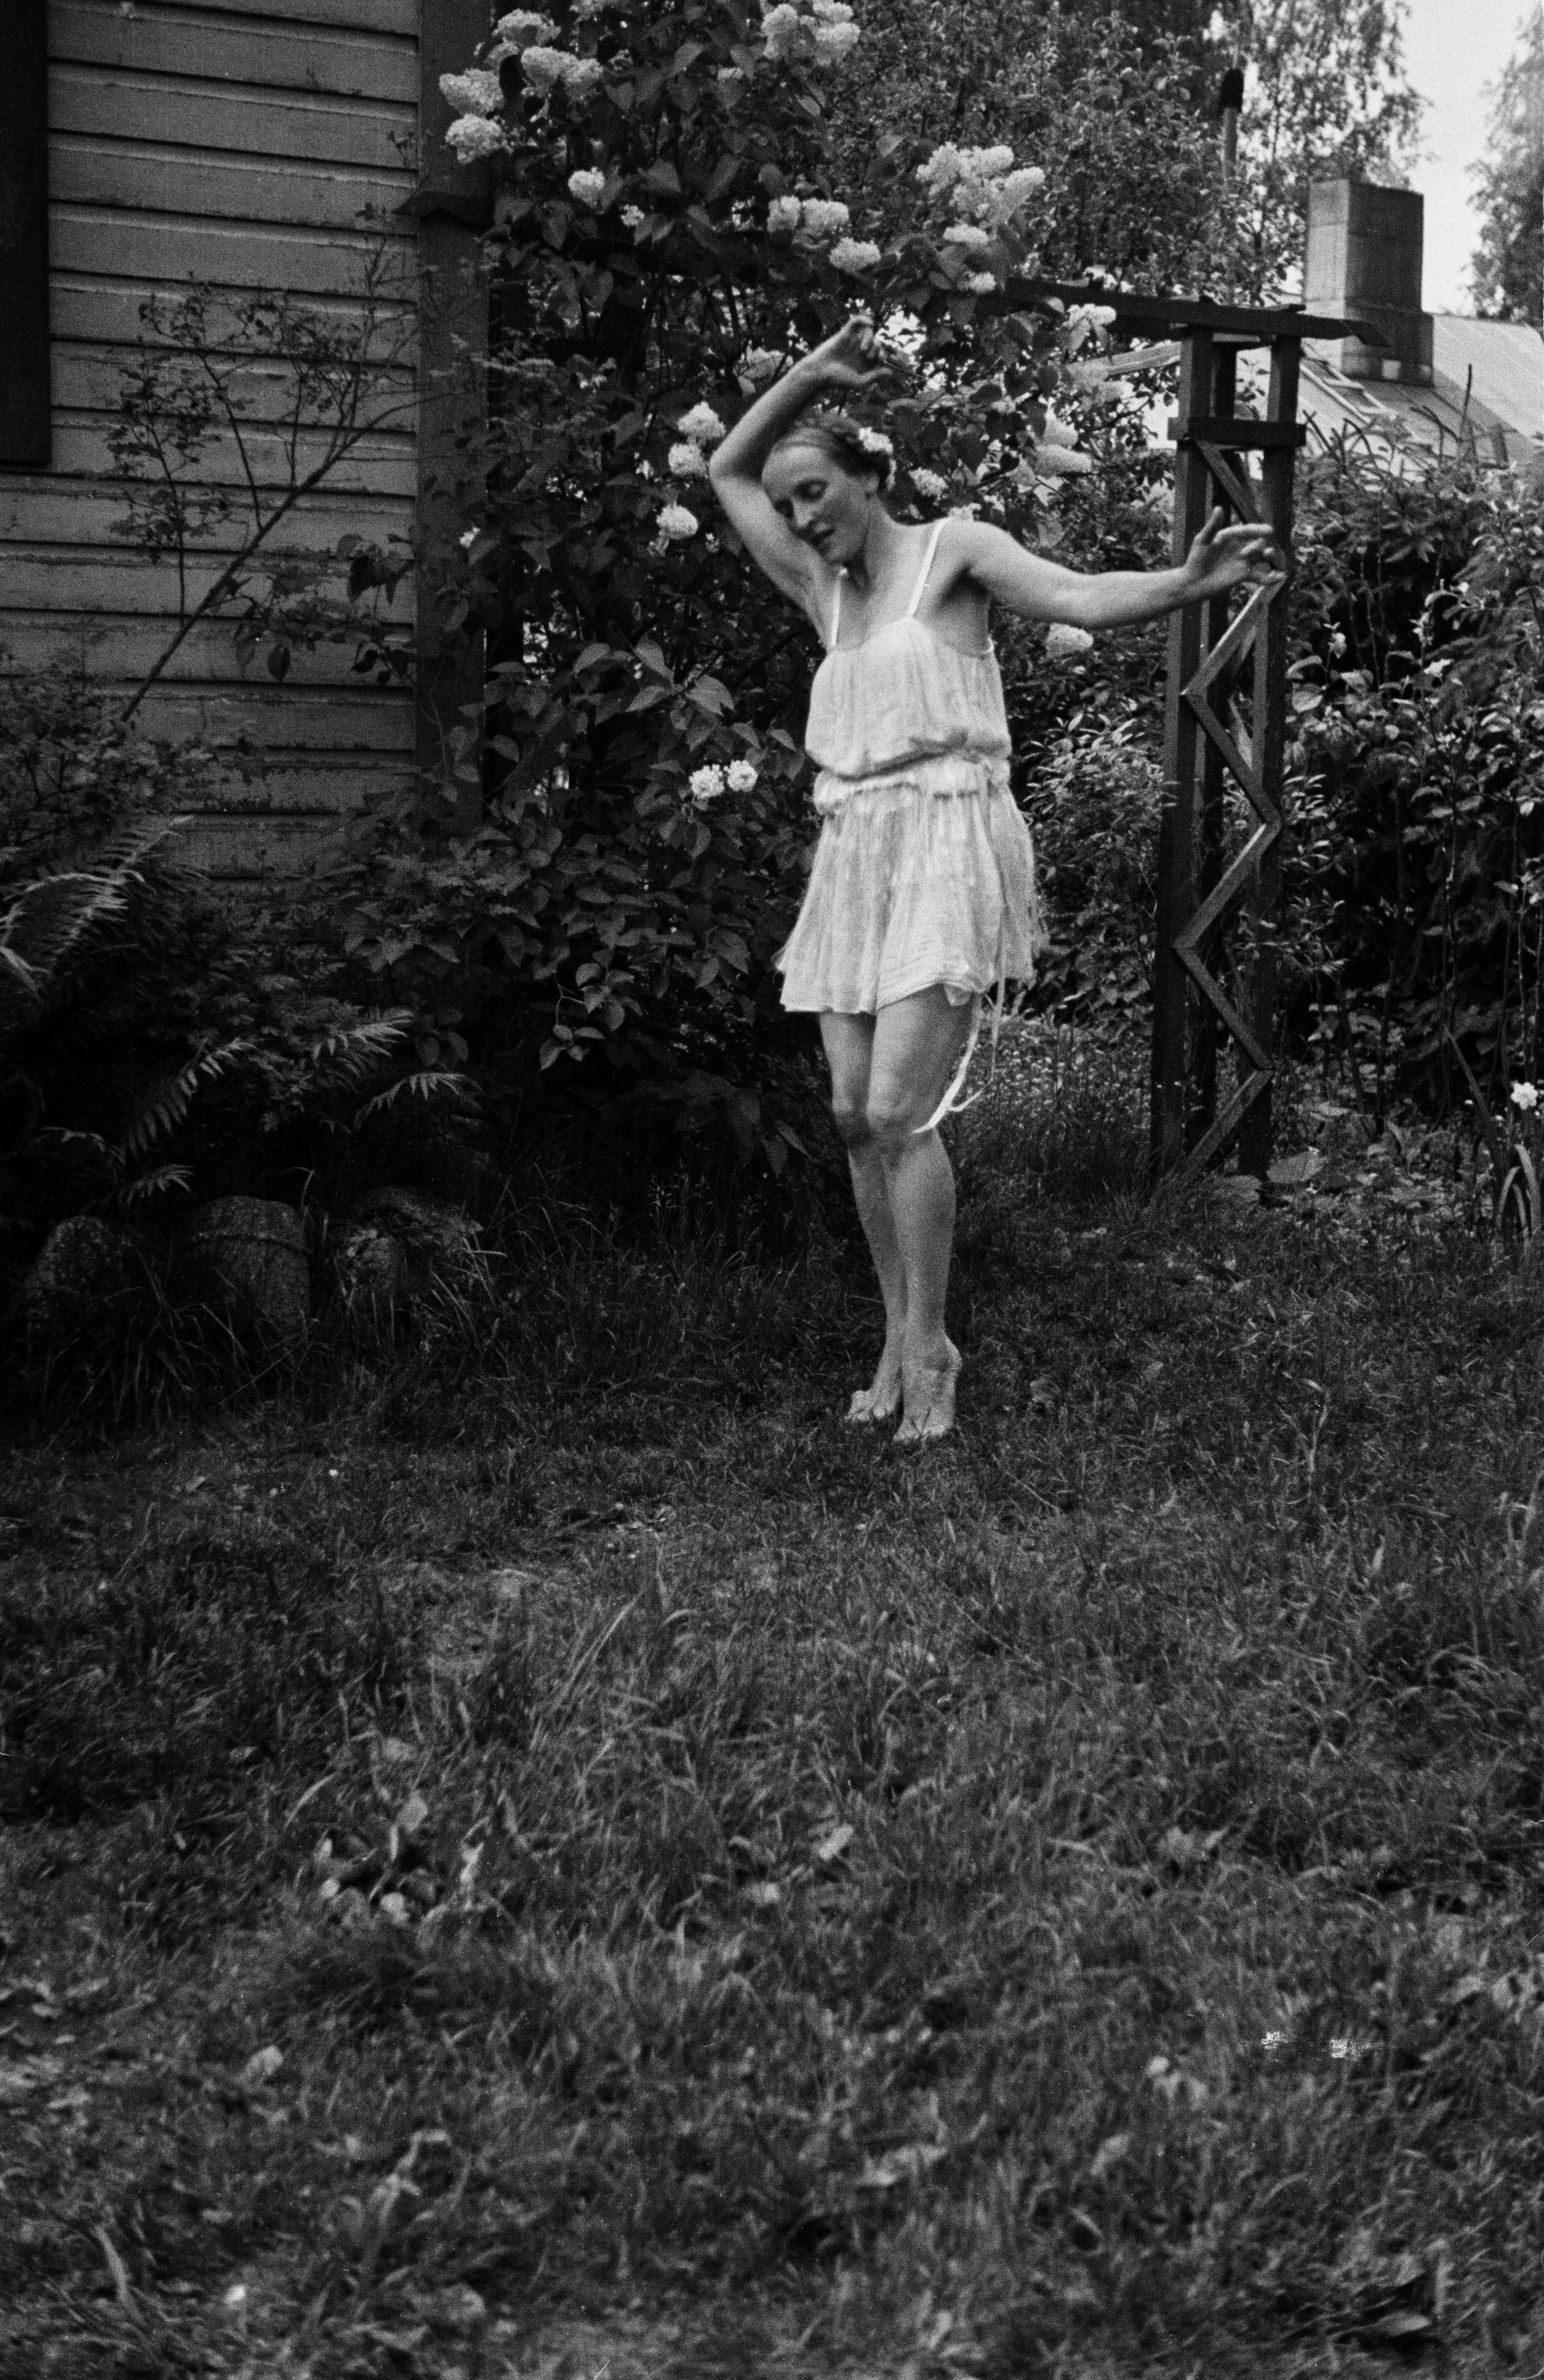 Rouva Selin tanssii puutarhassa, n. 1950. Kuva: Väinö Kannisto